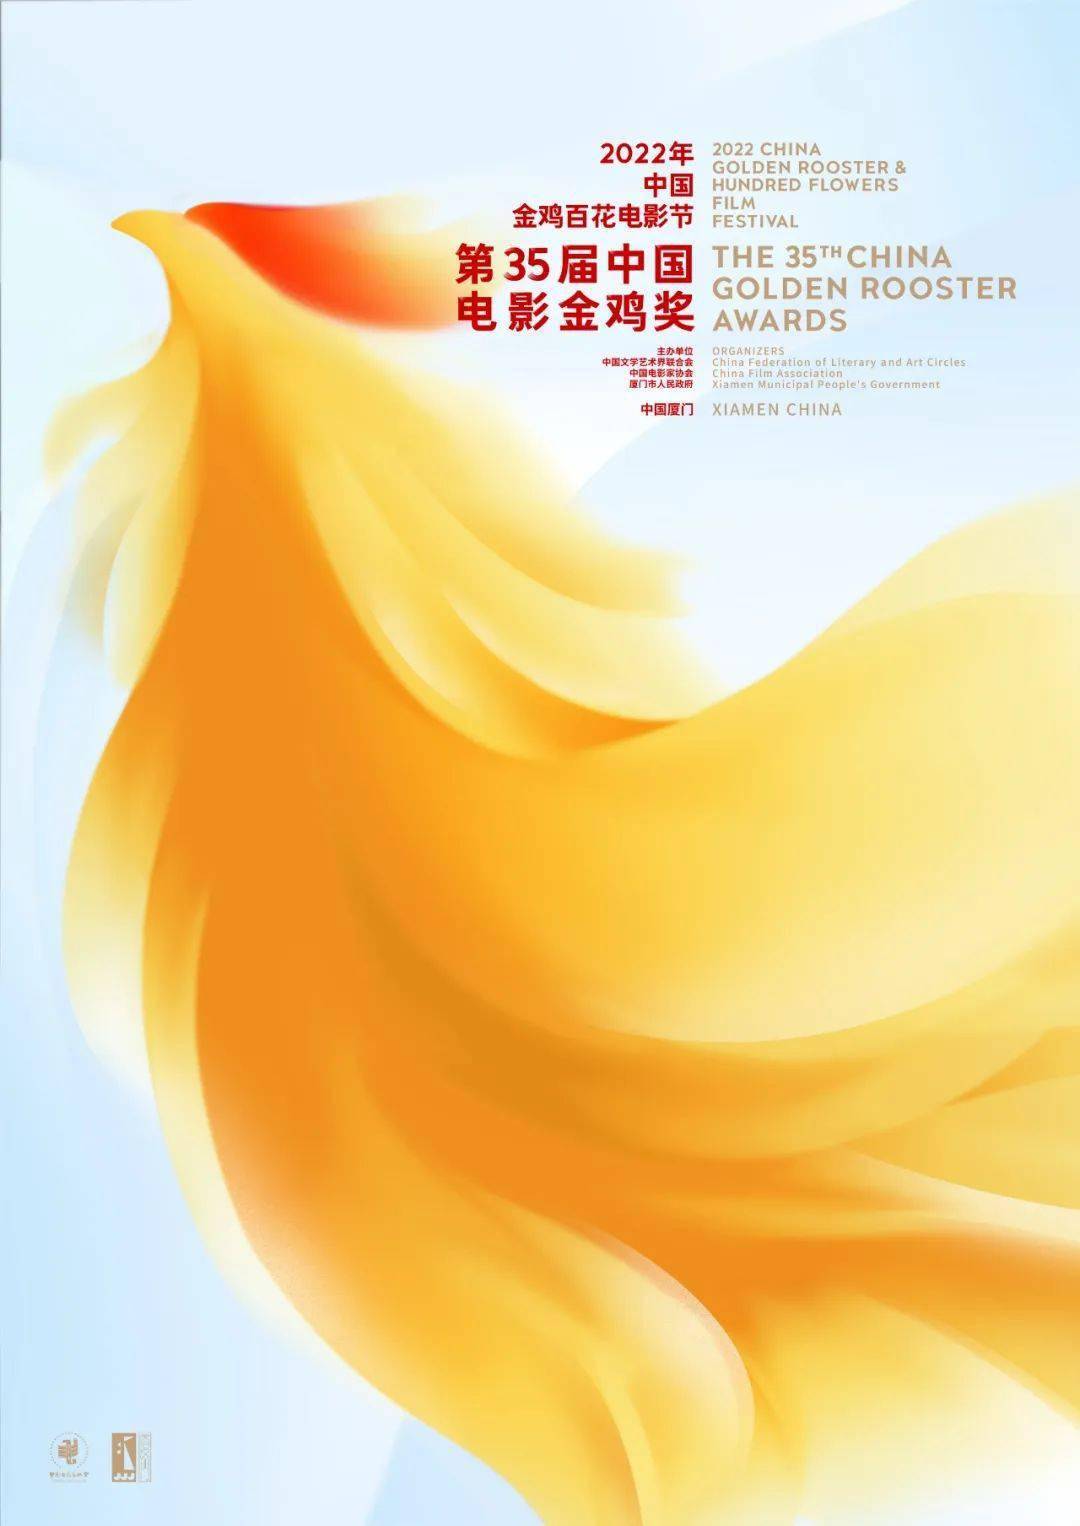 第35届中国电影金鸡奖颁奖典礼全程免费观看 中国电影金鸡奖2022直播